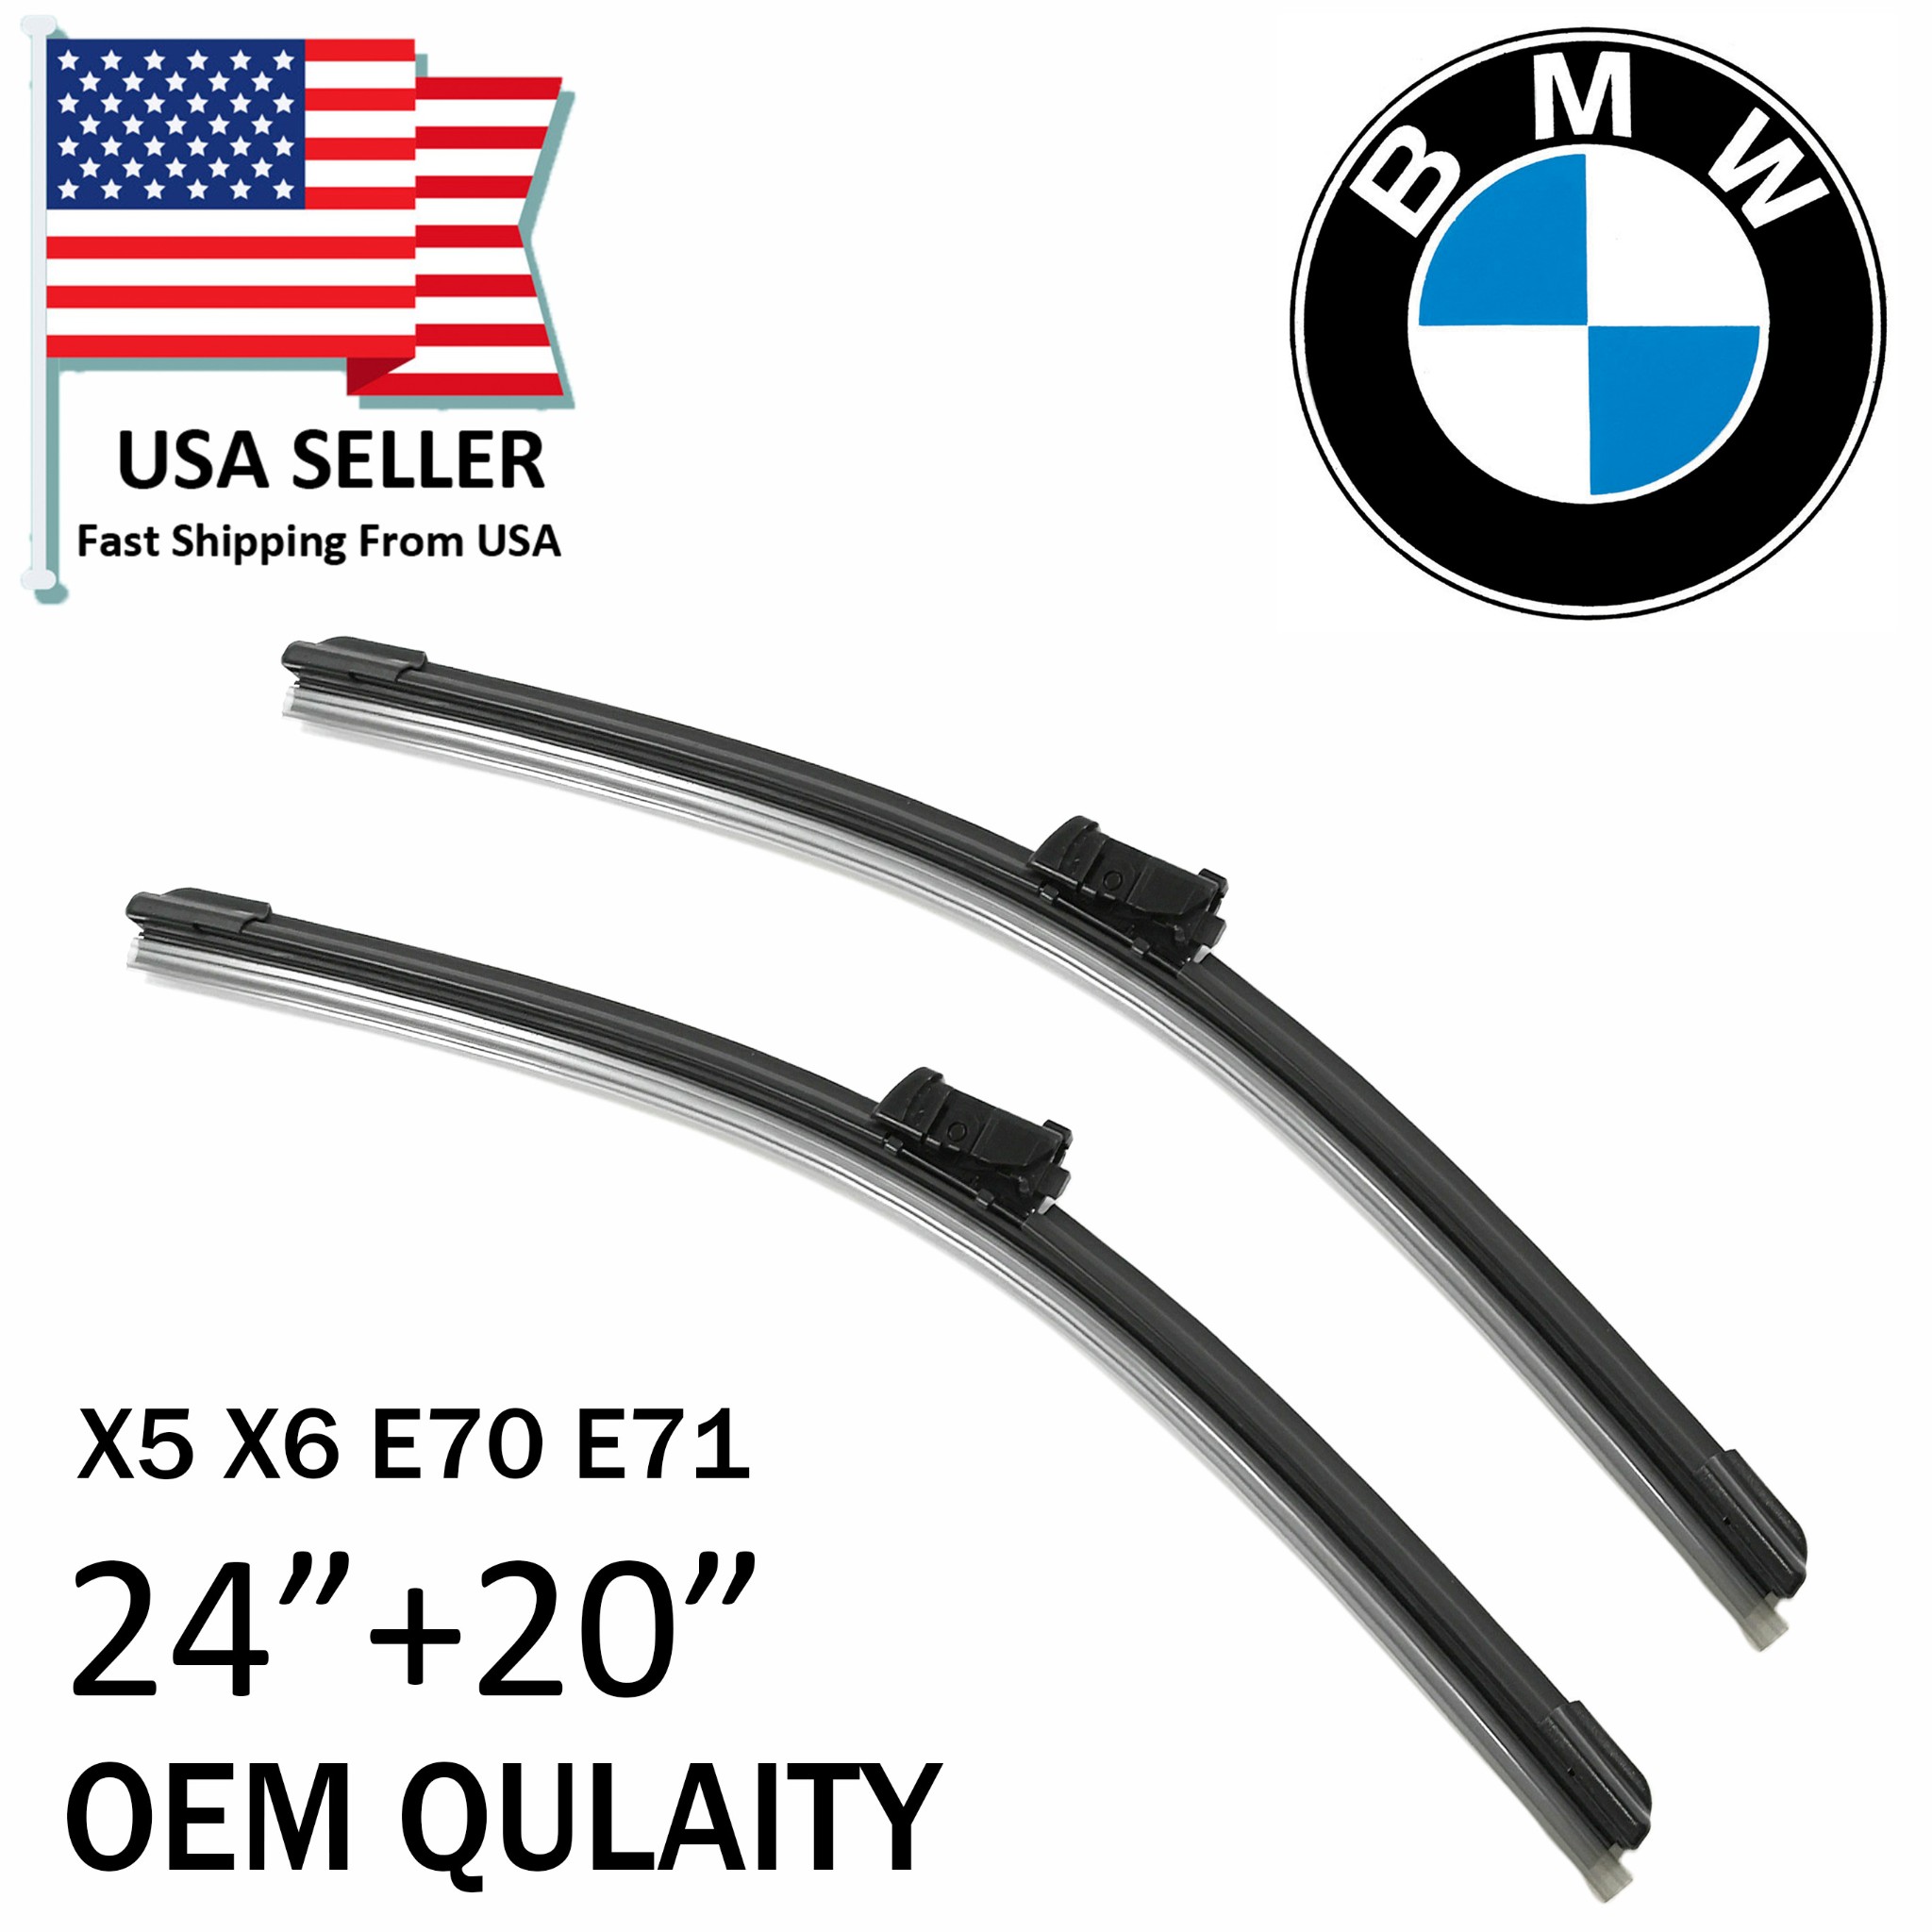 OEM Quality 2011-2014 BMW E70 E71 X5 X6 Windshield Wiper Blades 61610038893 | eBay 2014 Bmw X5 Rear Wiper Blade Size